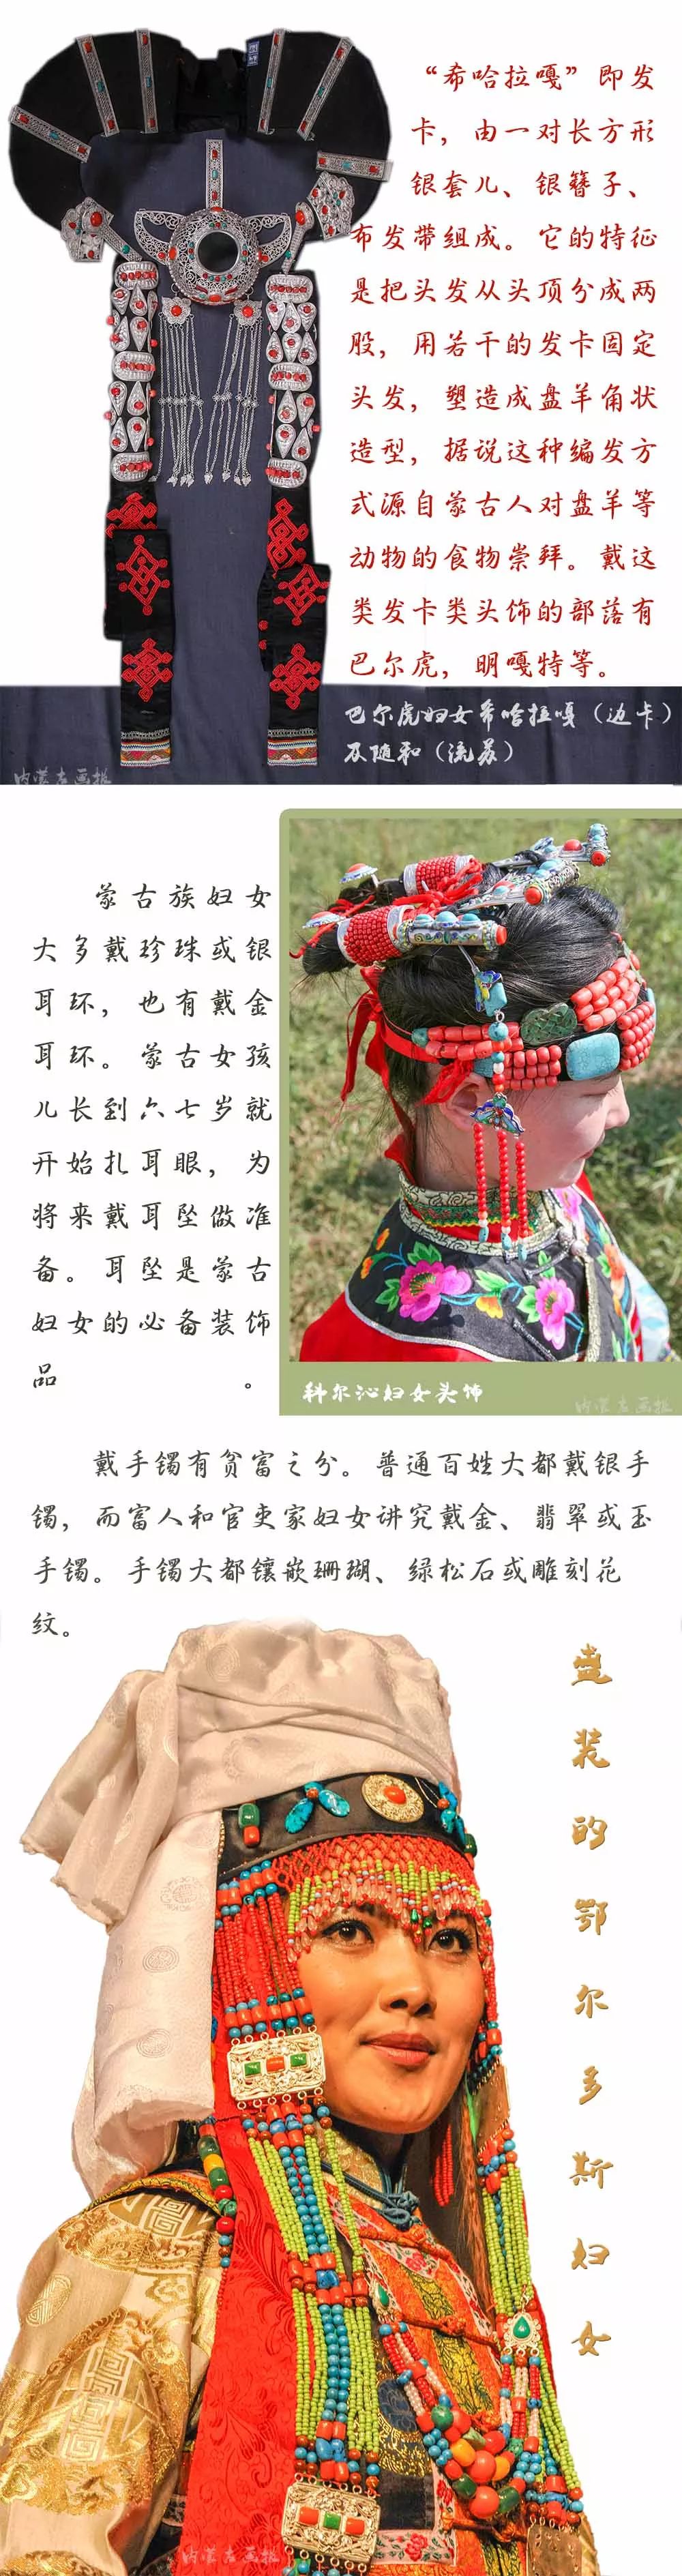 装点世界的蒙古族佩饰 | 女士篇 第10张